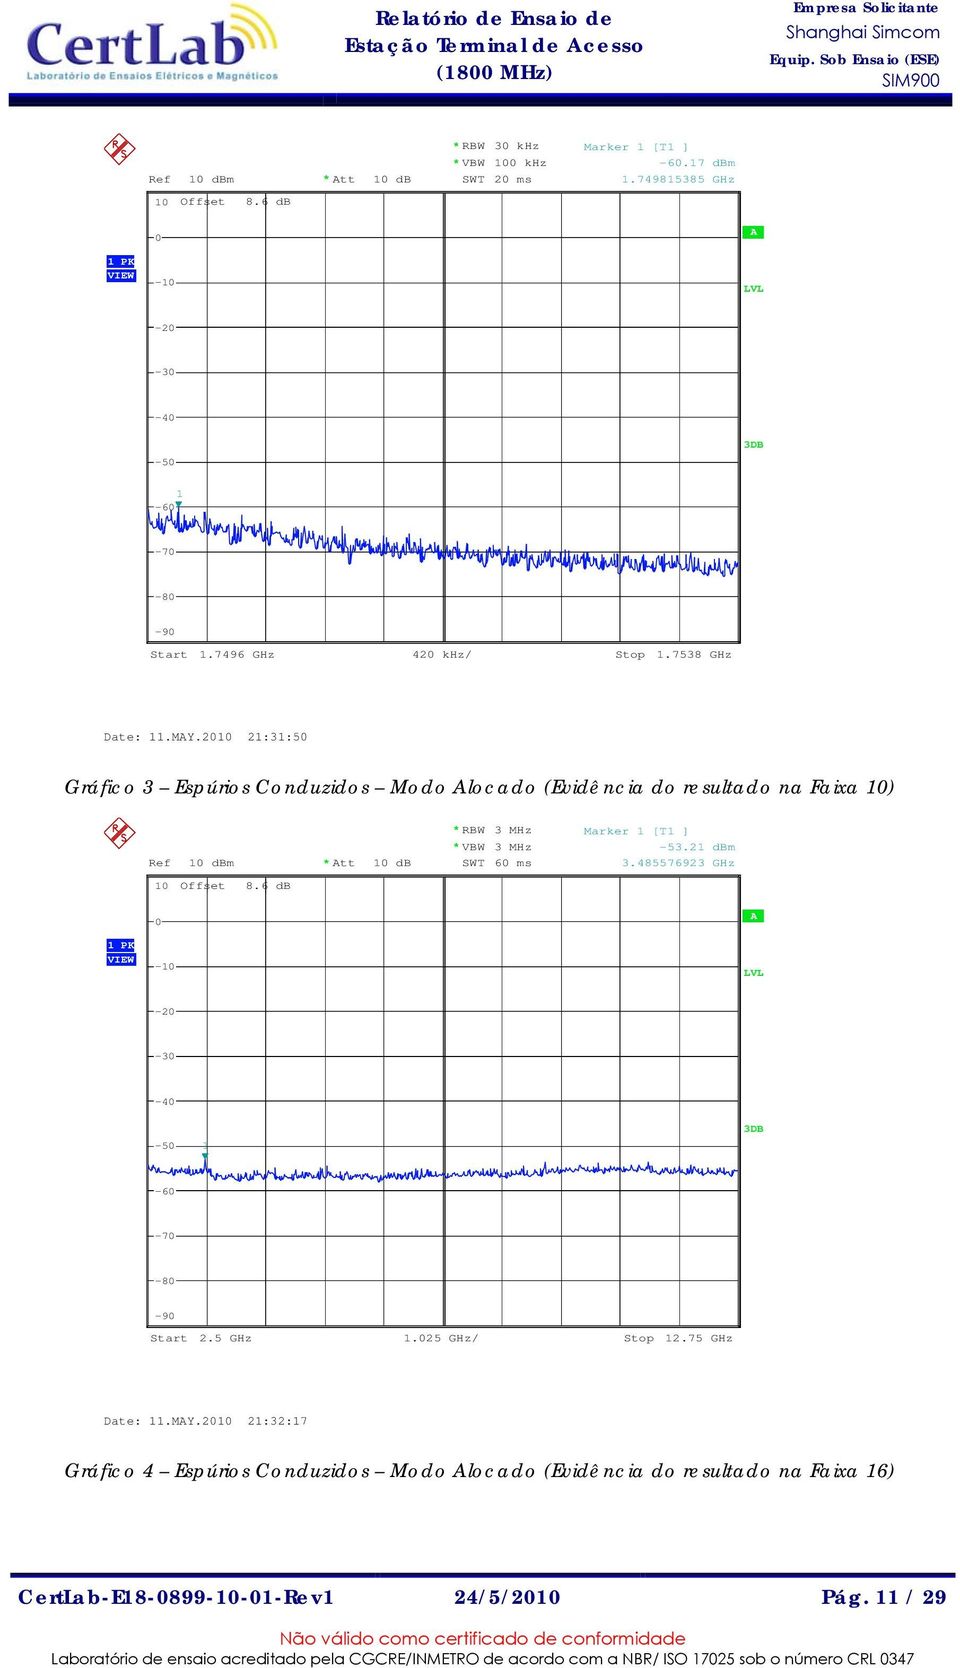 2010 21:31:50 Gráfico 3 Espúrios Conduzidos Modo Alocado (Evidência do resultado na Faixa 10) Ref 10 dbm * Att 10 db * RBW 3 MHz * VBW 3 MHz SWT 60 ms Marker 1 [T1 ] -53.